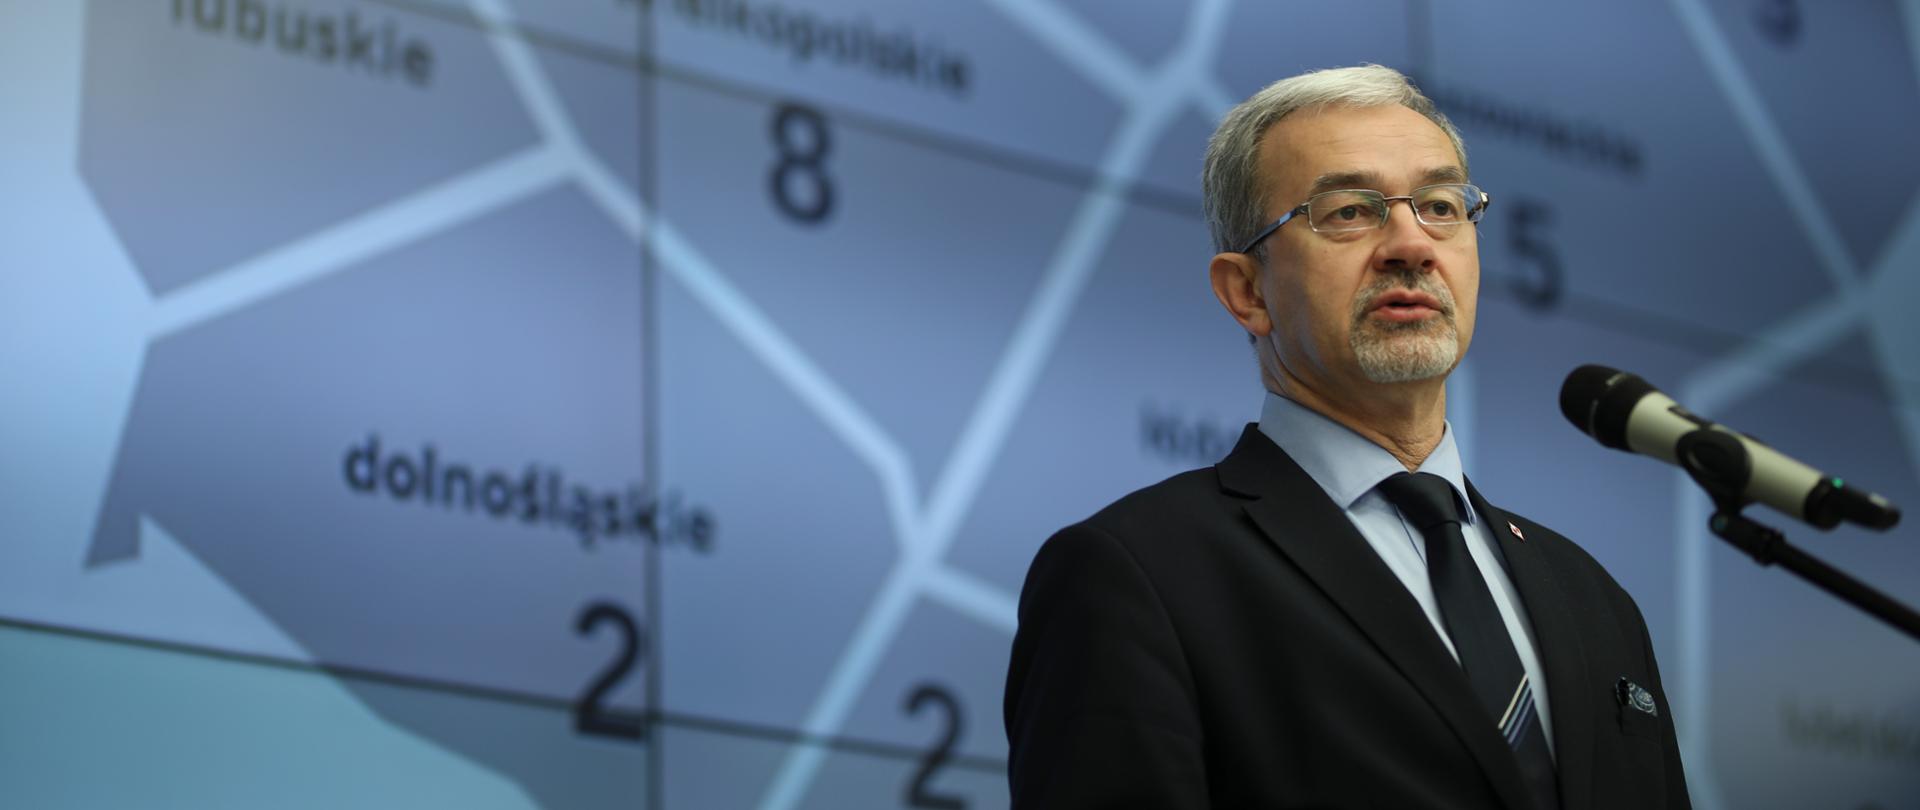 Minister Kwieciński mówi do stojącego mikrofonu na tle ekranu z wyświetloną mapą Polski